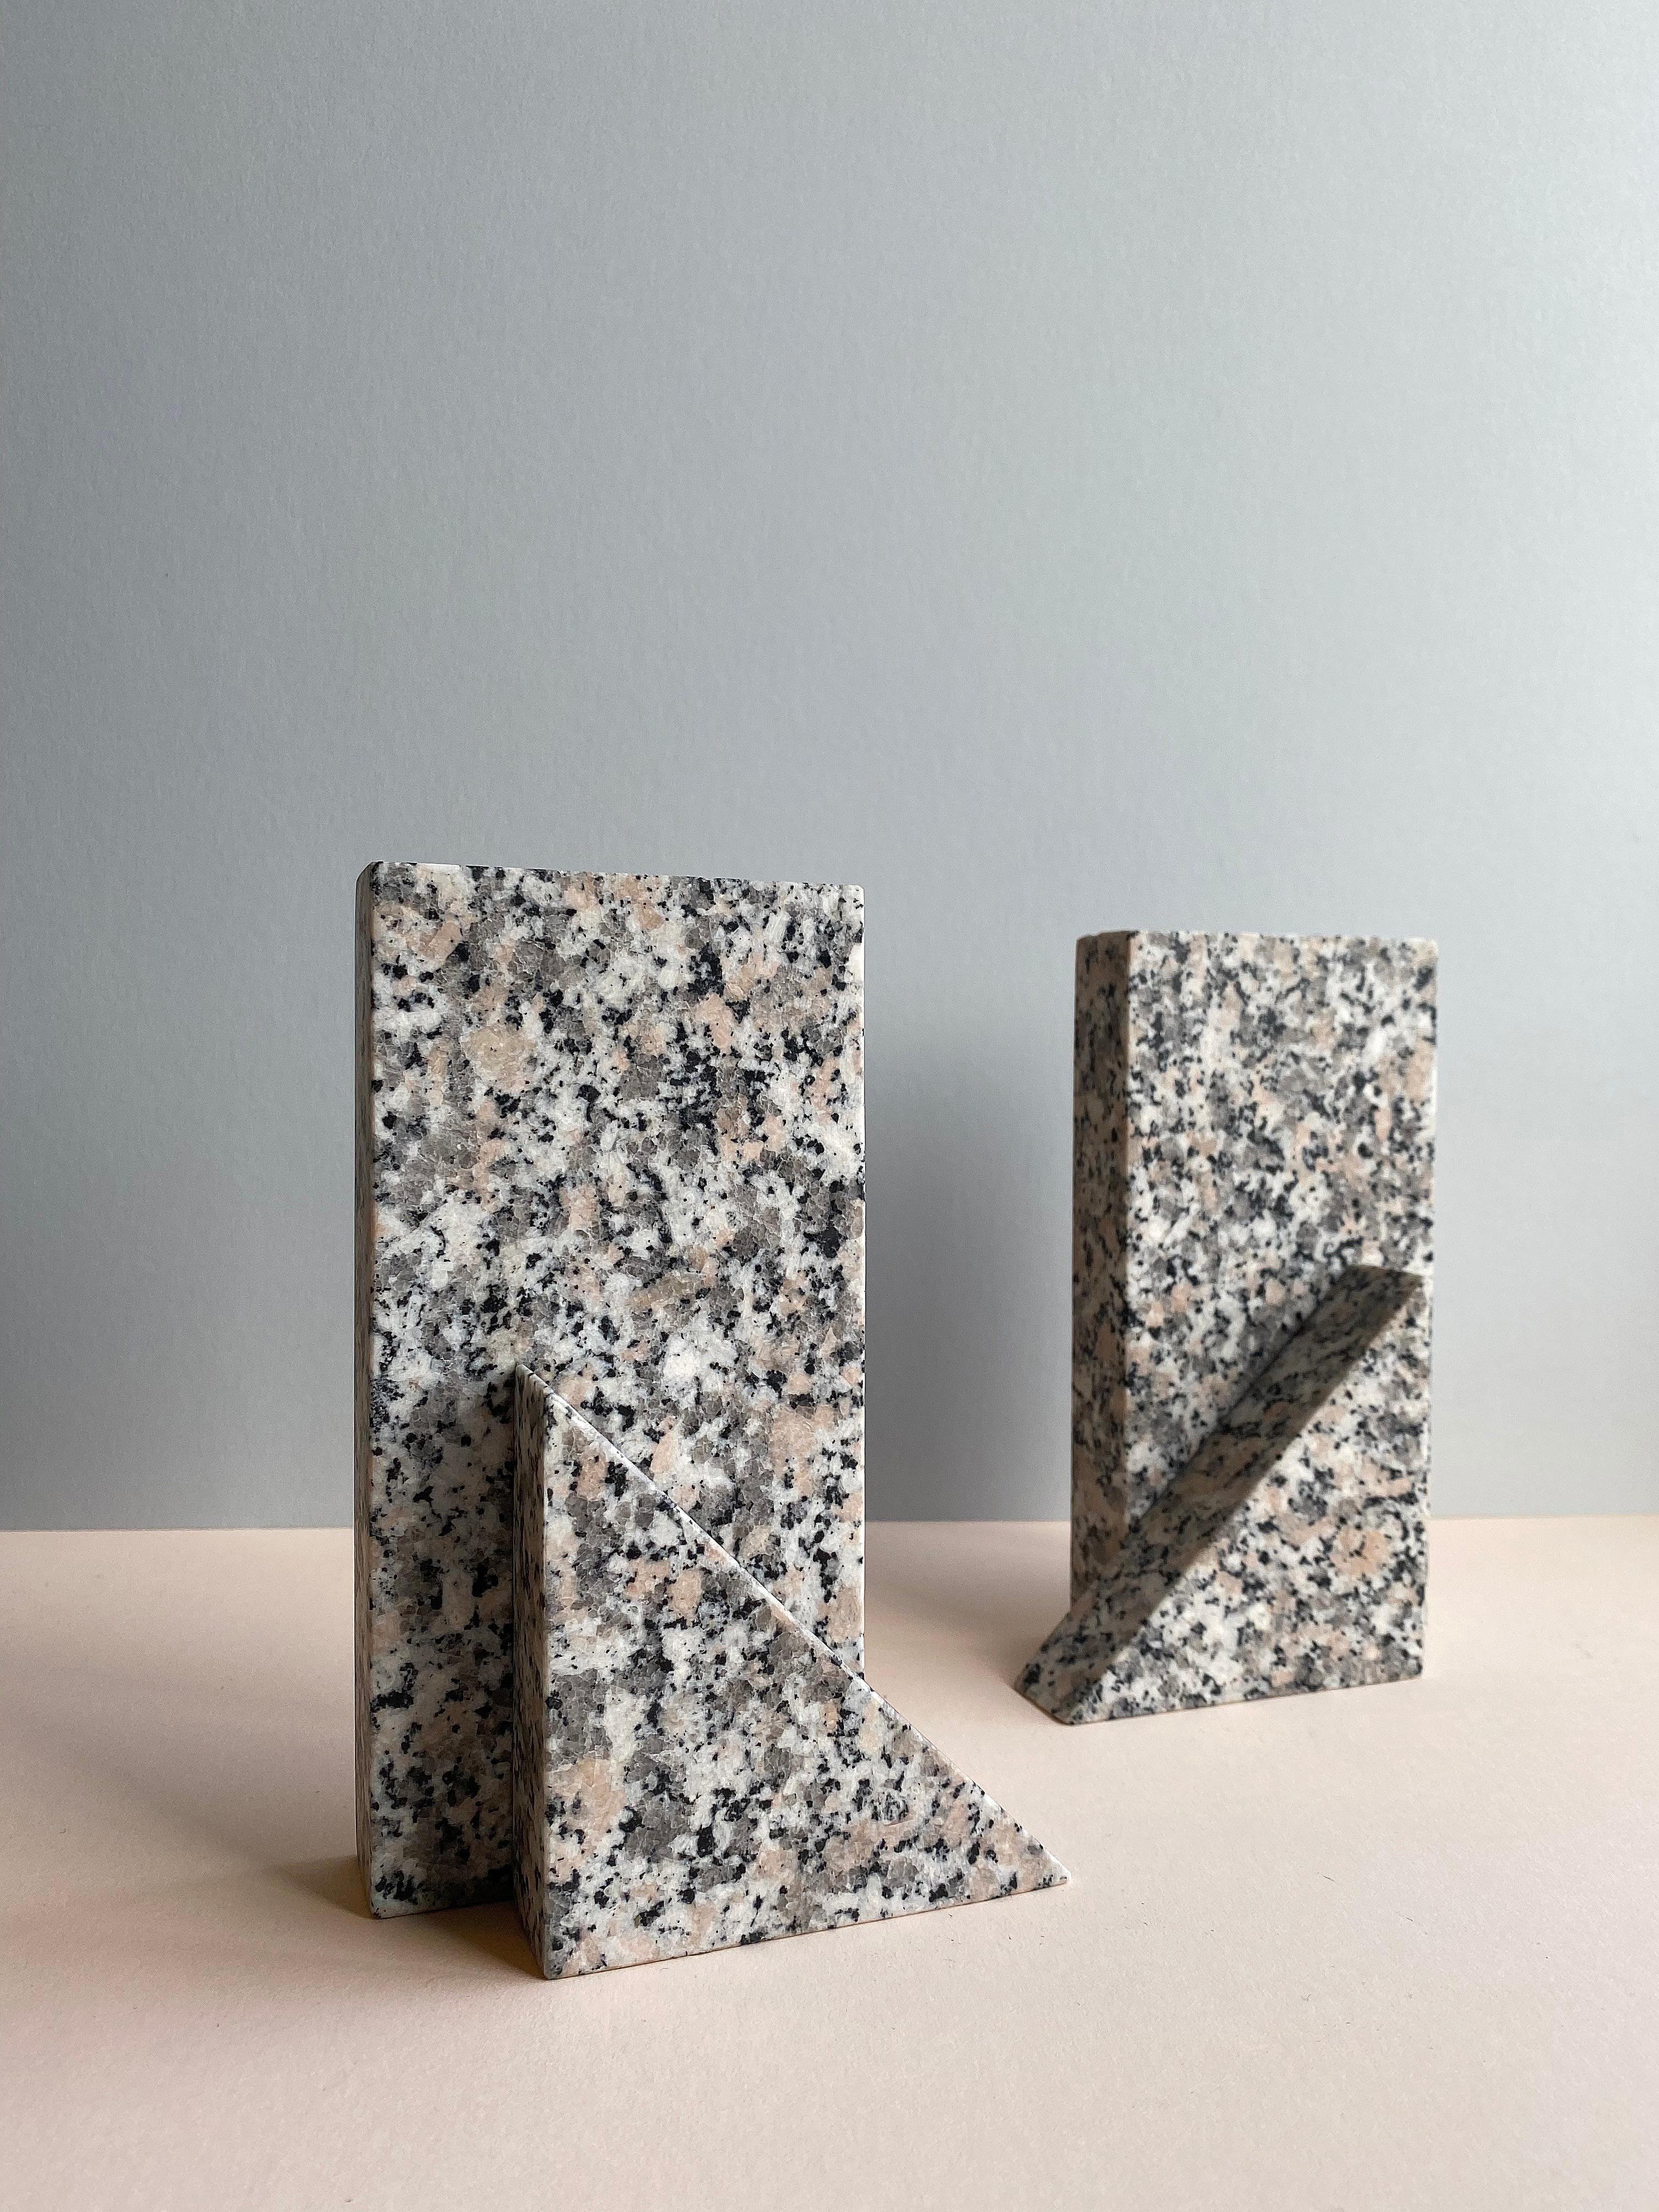 Materialsatz von Theodora Alfredsdottir
Einzigartiges Set
MATERIALIEN: Granit
Abmessungen: 11 x 6 x 18 cm

Theodora Alfredsdottir ist ein Studio für Produktdesign mit Sitz in London. 
Theodora ist eine isländische Produktdesignerin. Sie hat einen